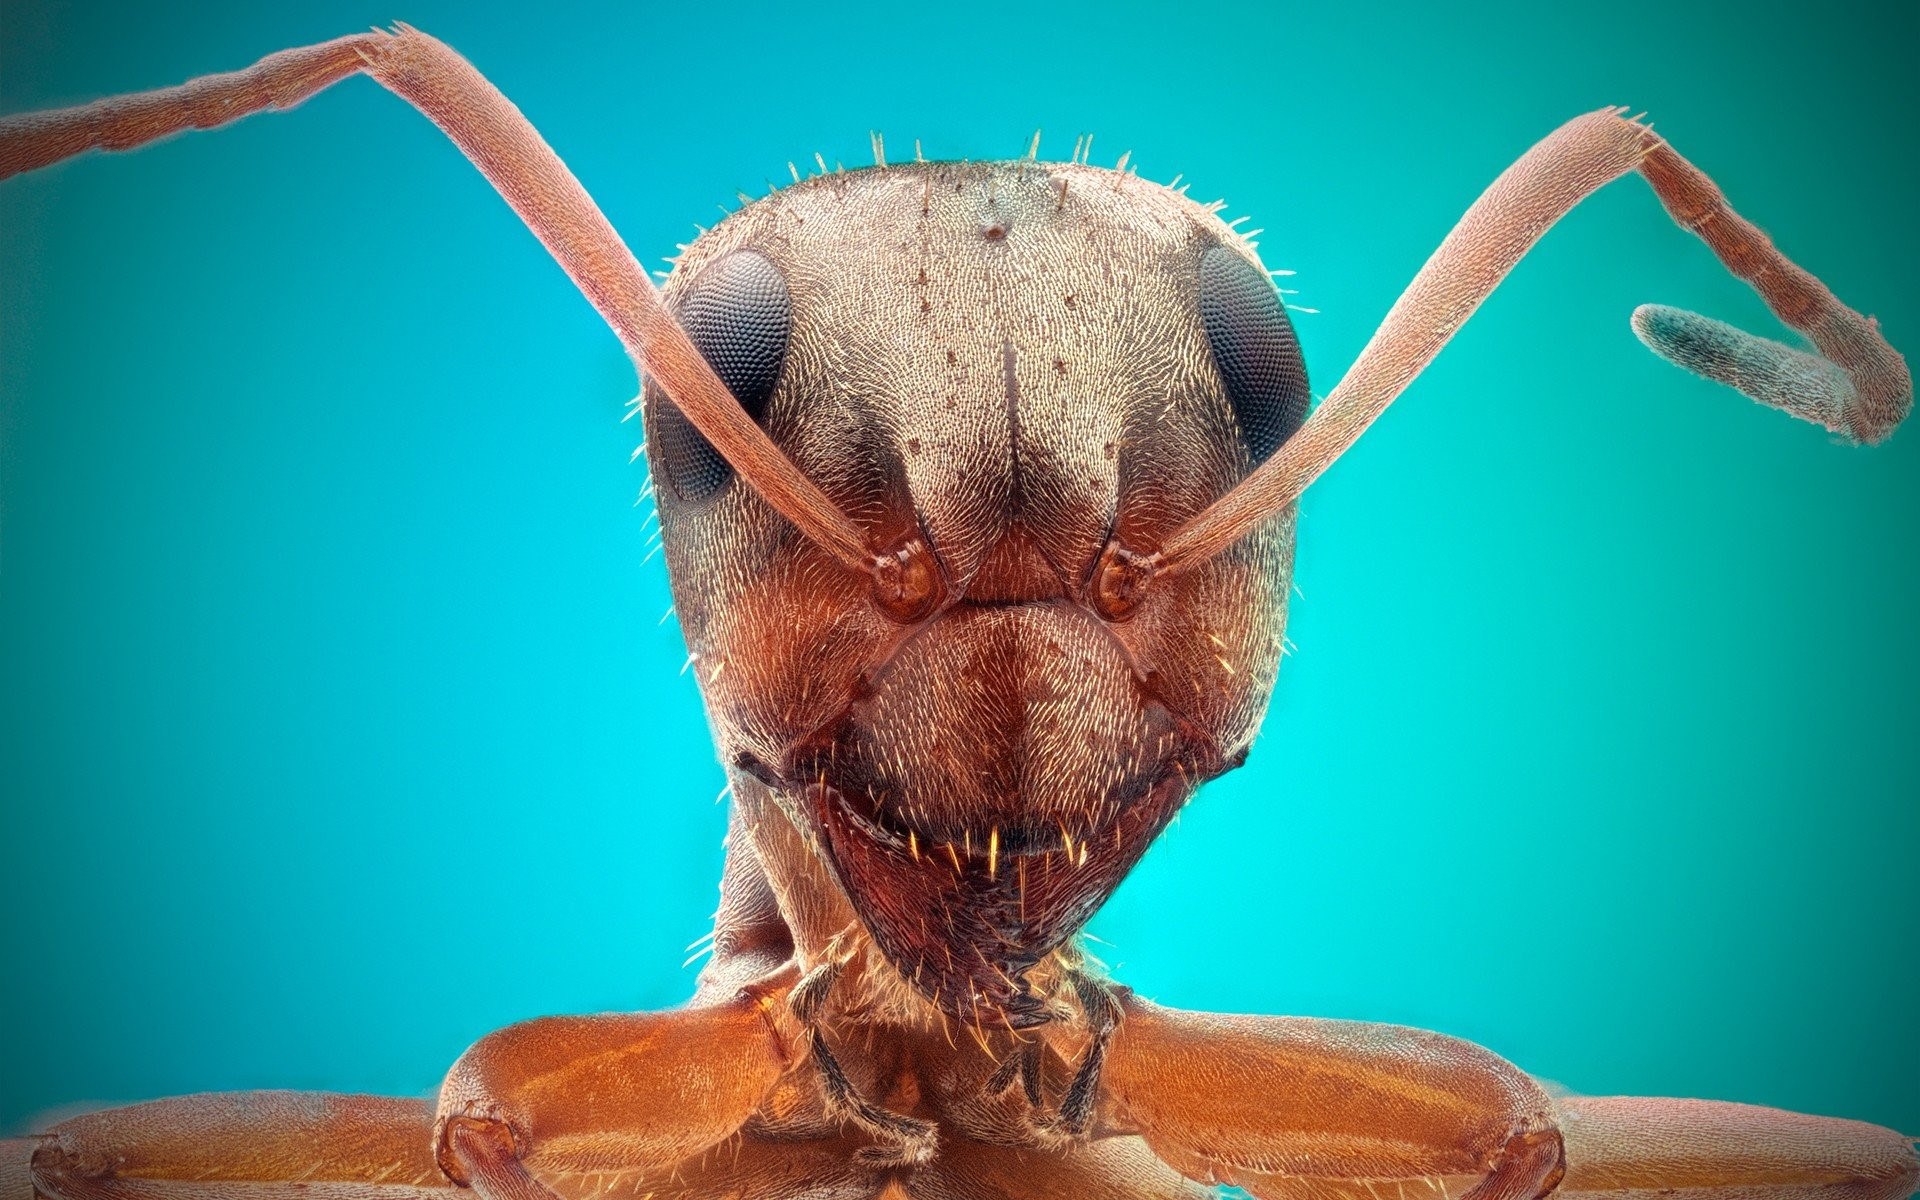 Фото головы муравья под микроскопом